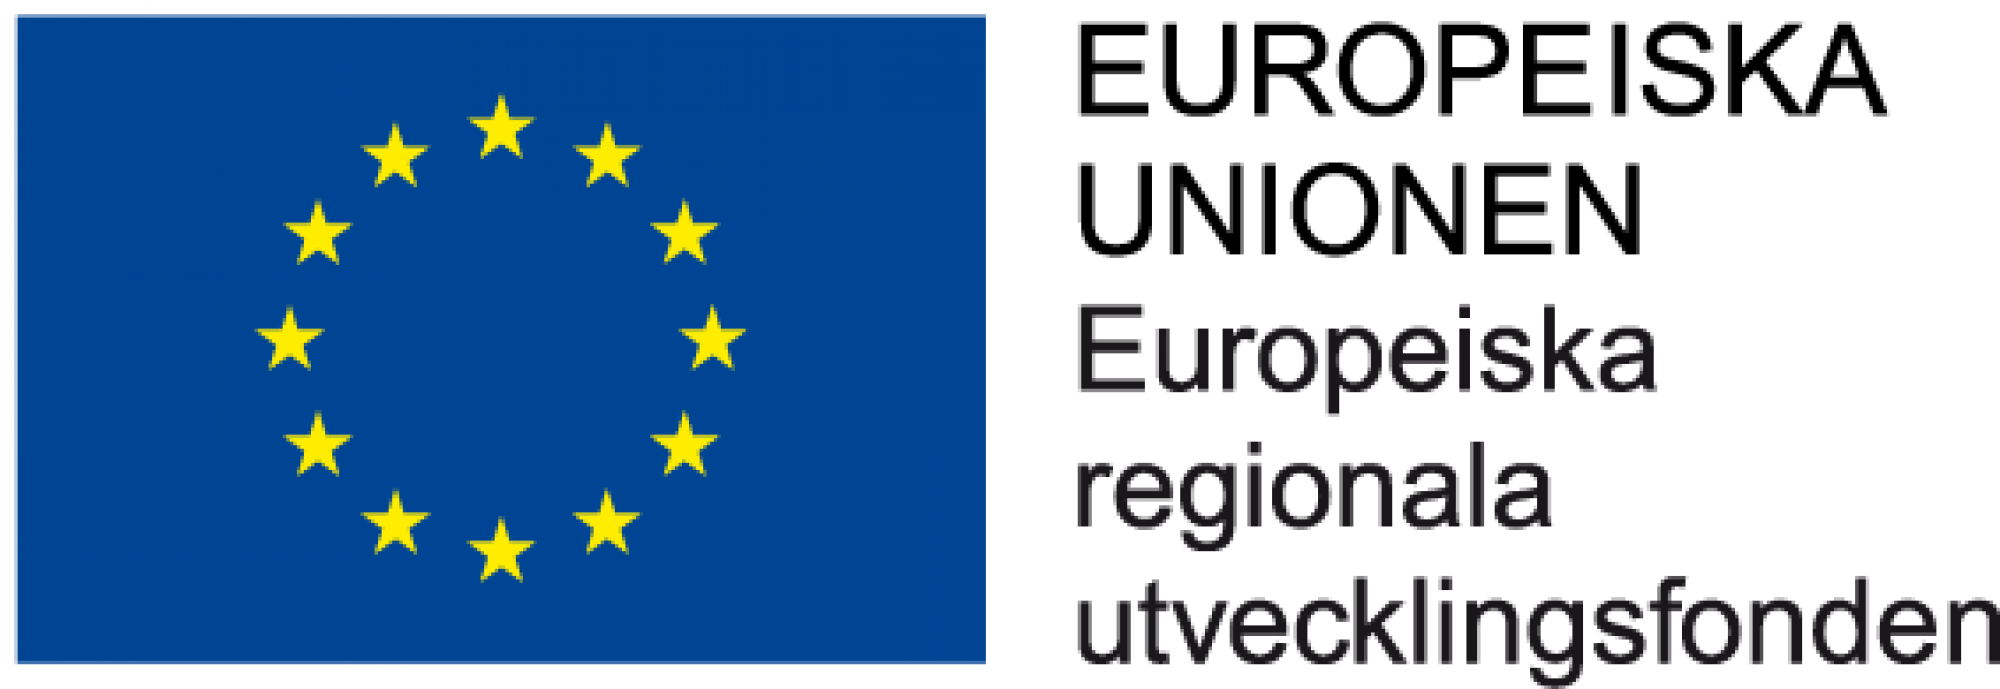 Europeiska Unionen - Europeiska Regionala Utvecklingsfonden